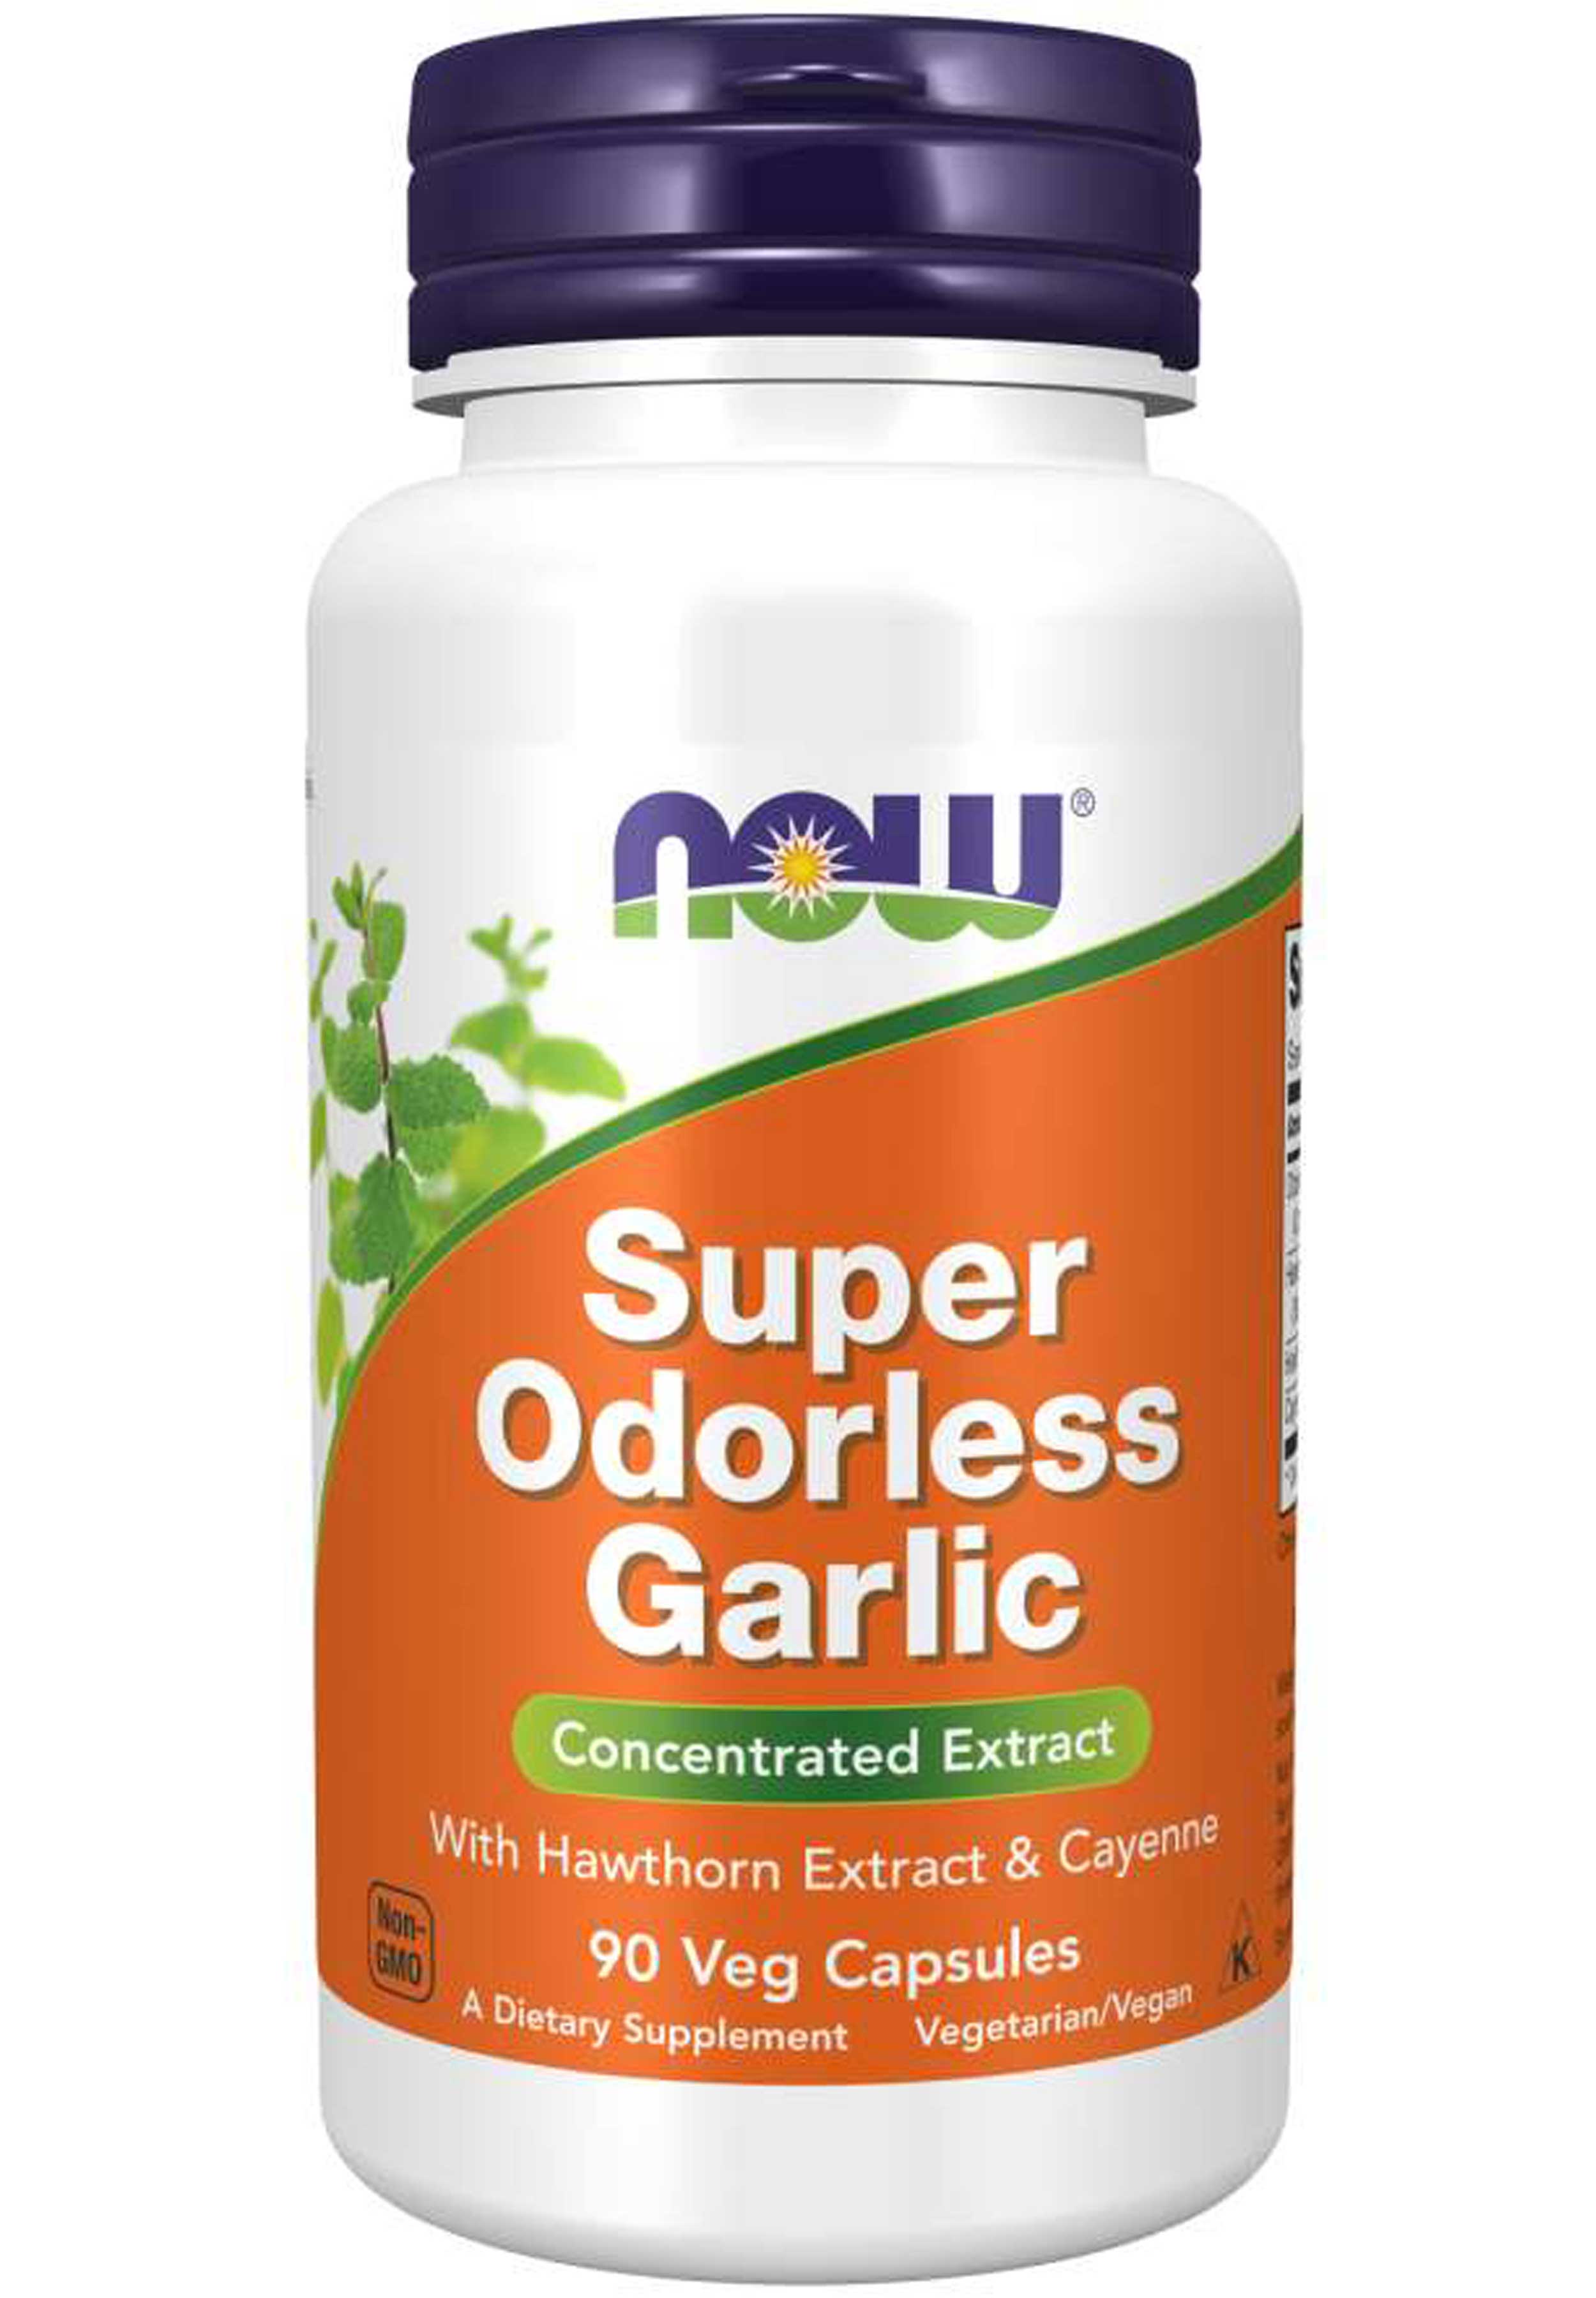 NOW Super Odorless Garlic